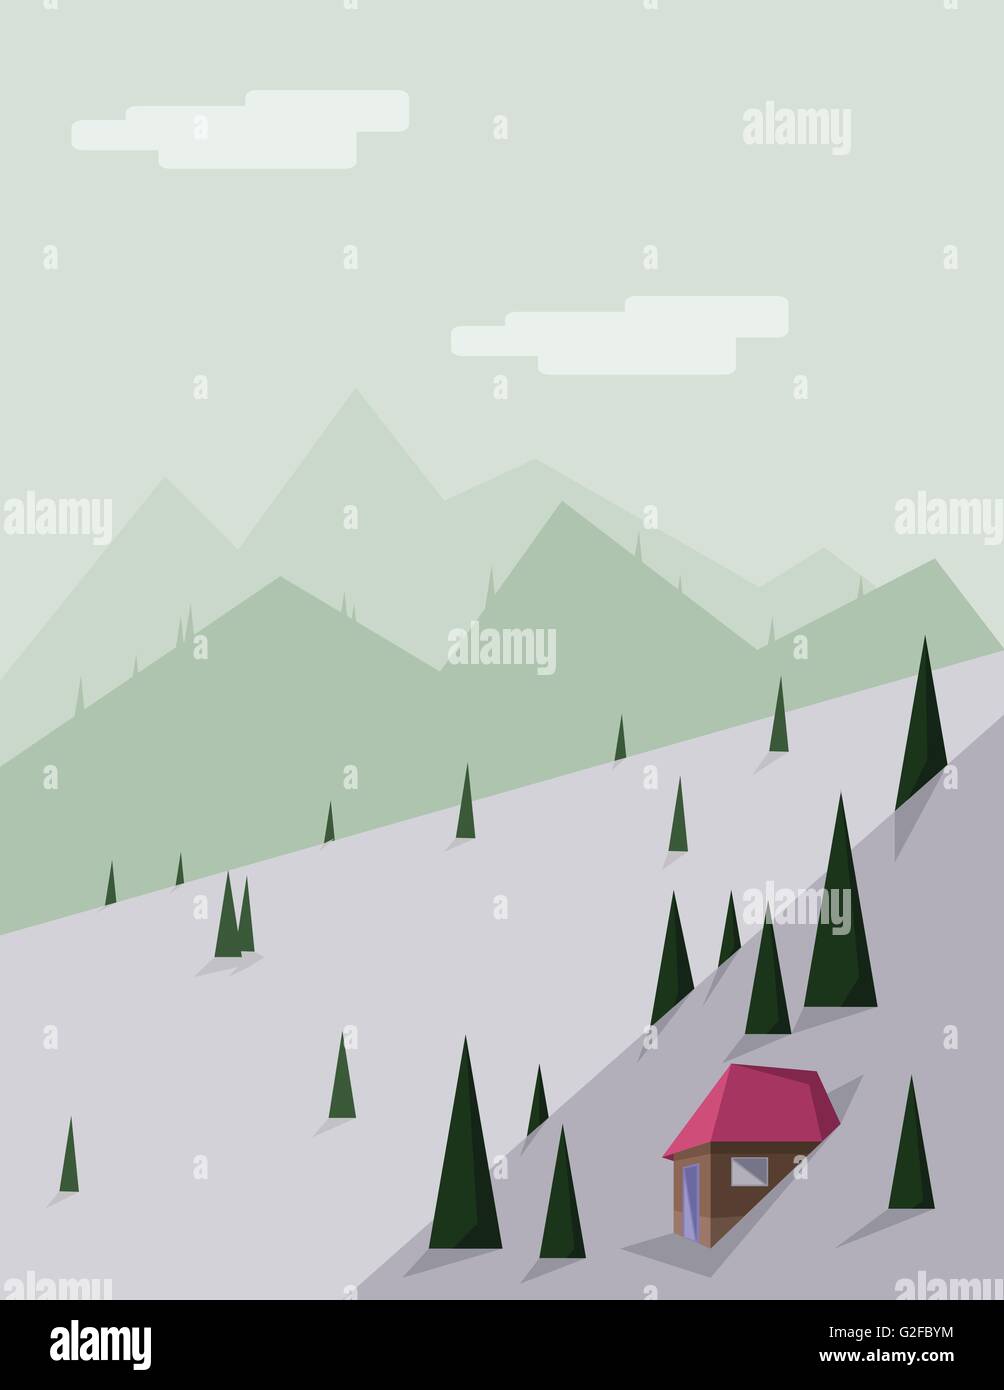 Paesaggio Astratto con alberi di pino, una casa marrone con un tetto rosso, verde delle colline e delle montagne, su uno sfondo verde chiaro con w Illustrazione Vettoriale